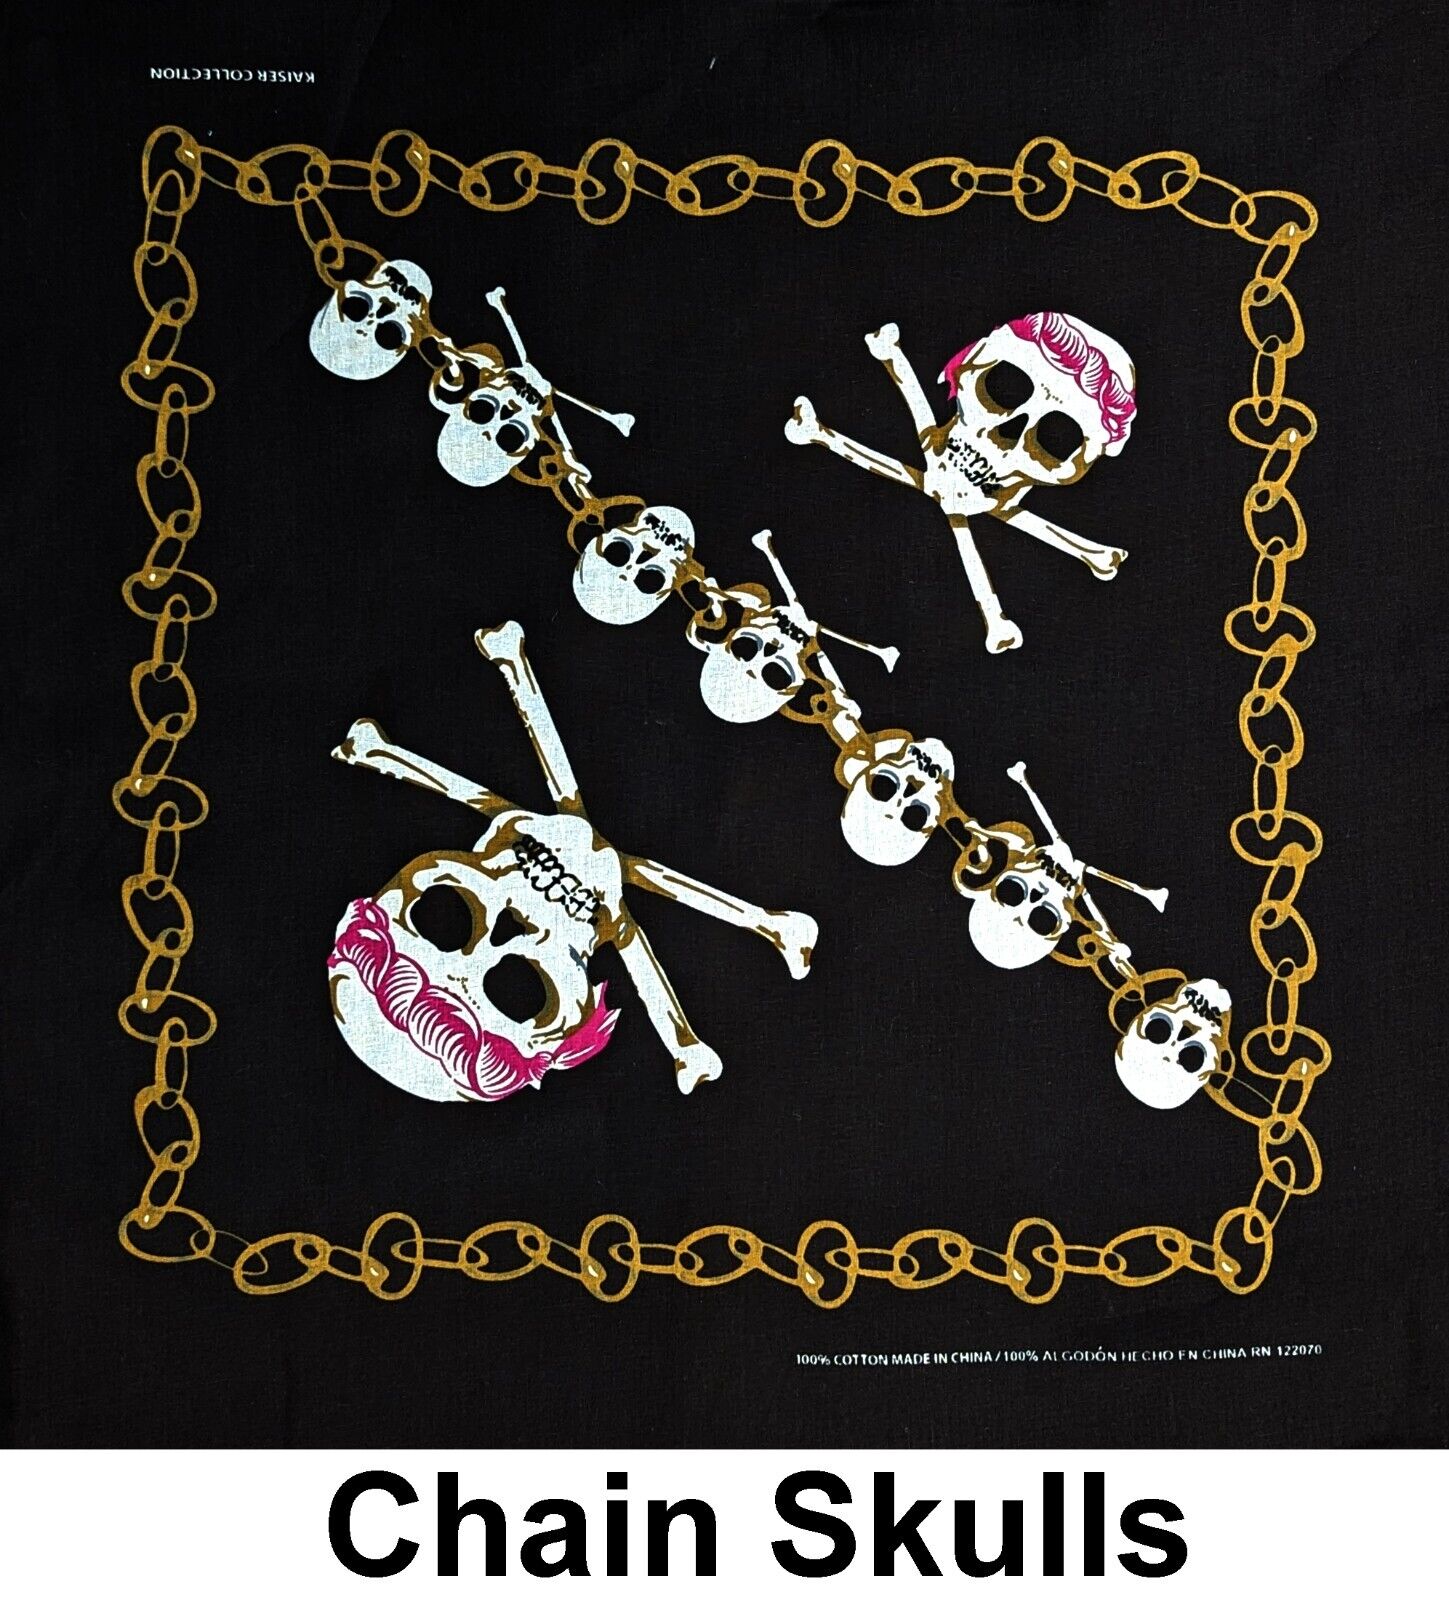 Chain Skulls